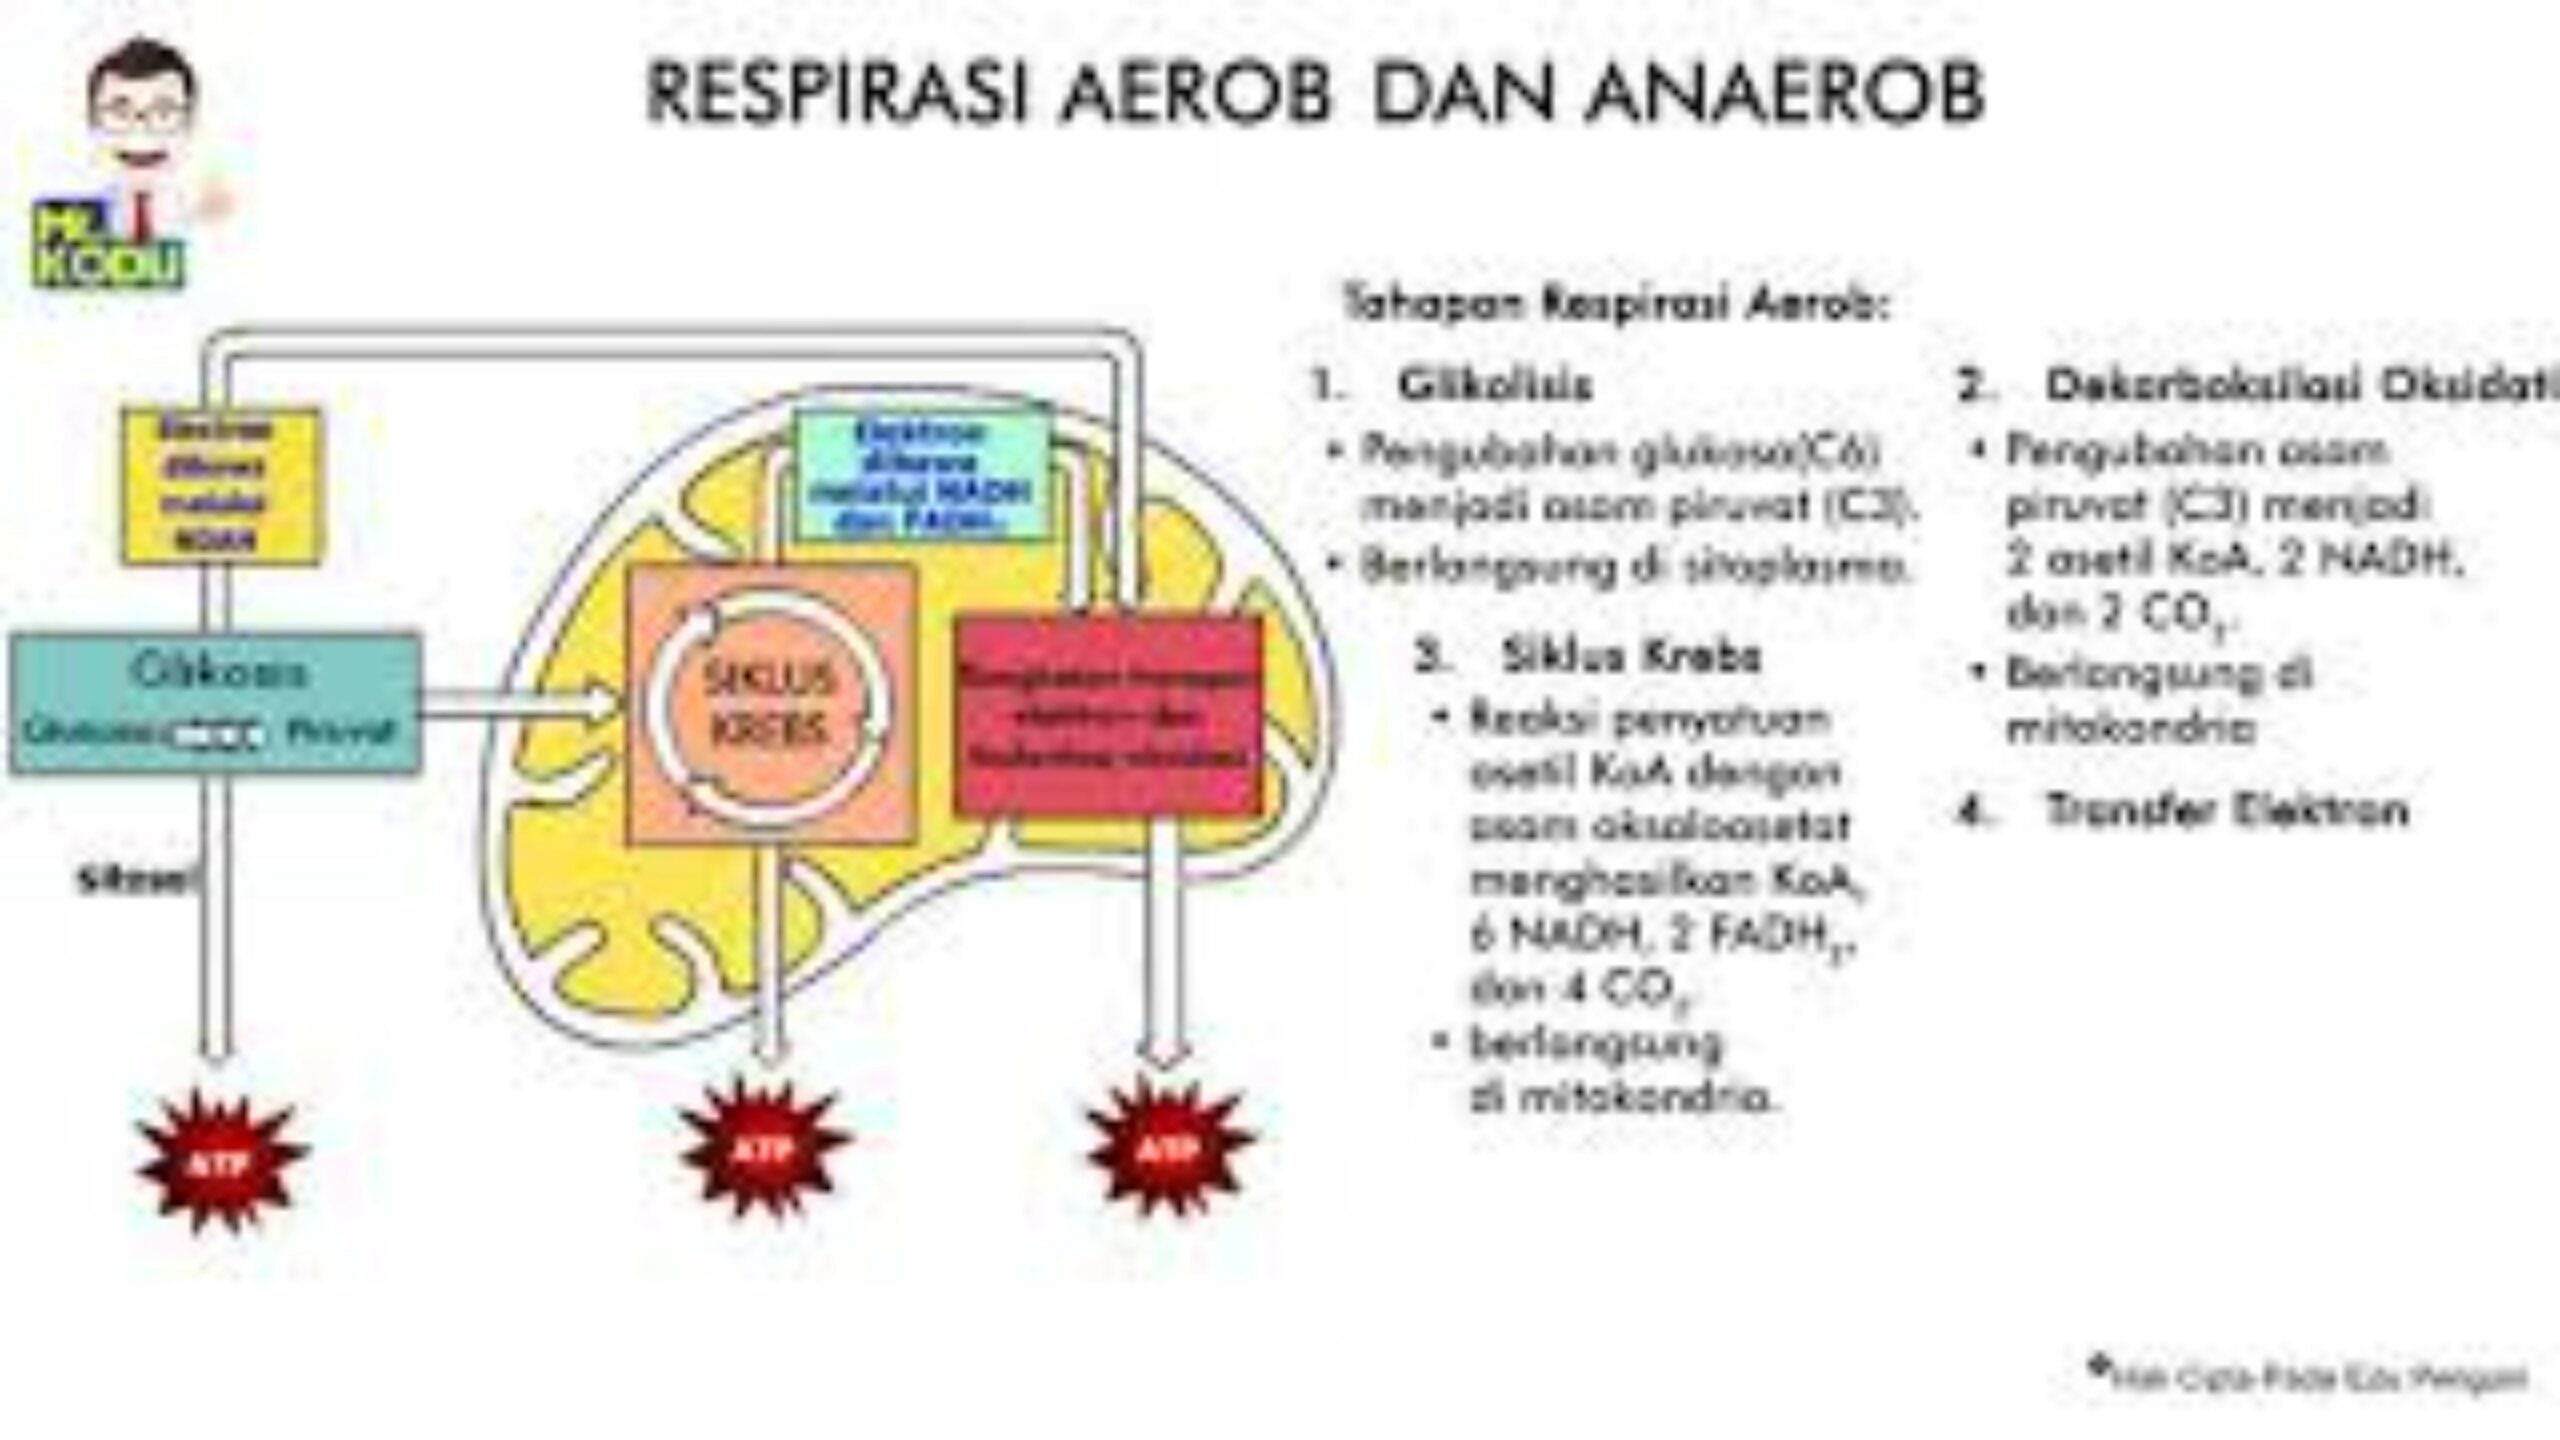 Perbedaan Respirasi Aerob dan Anaerob dan Tahapan Respirasi Aerob